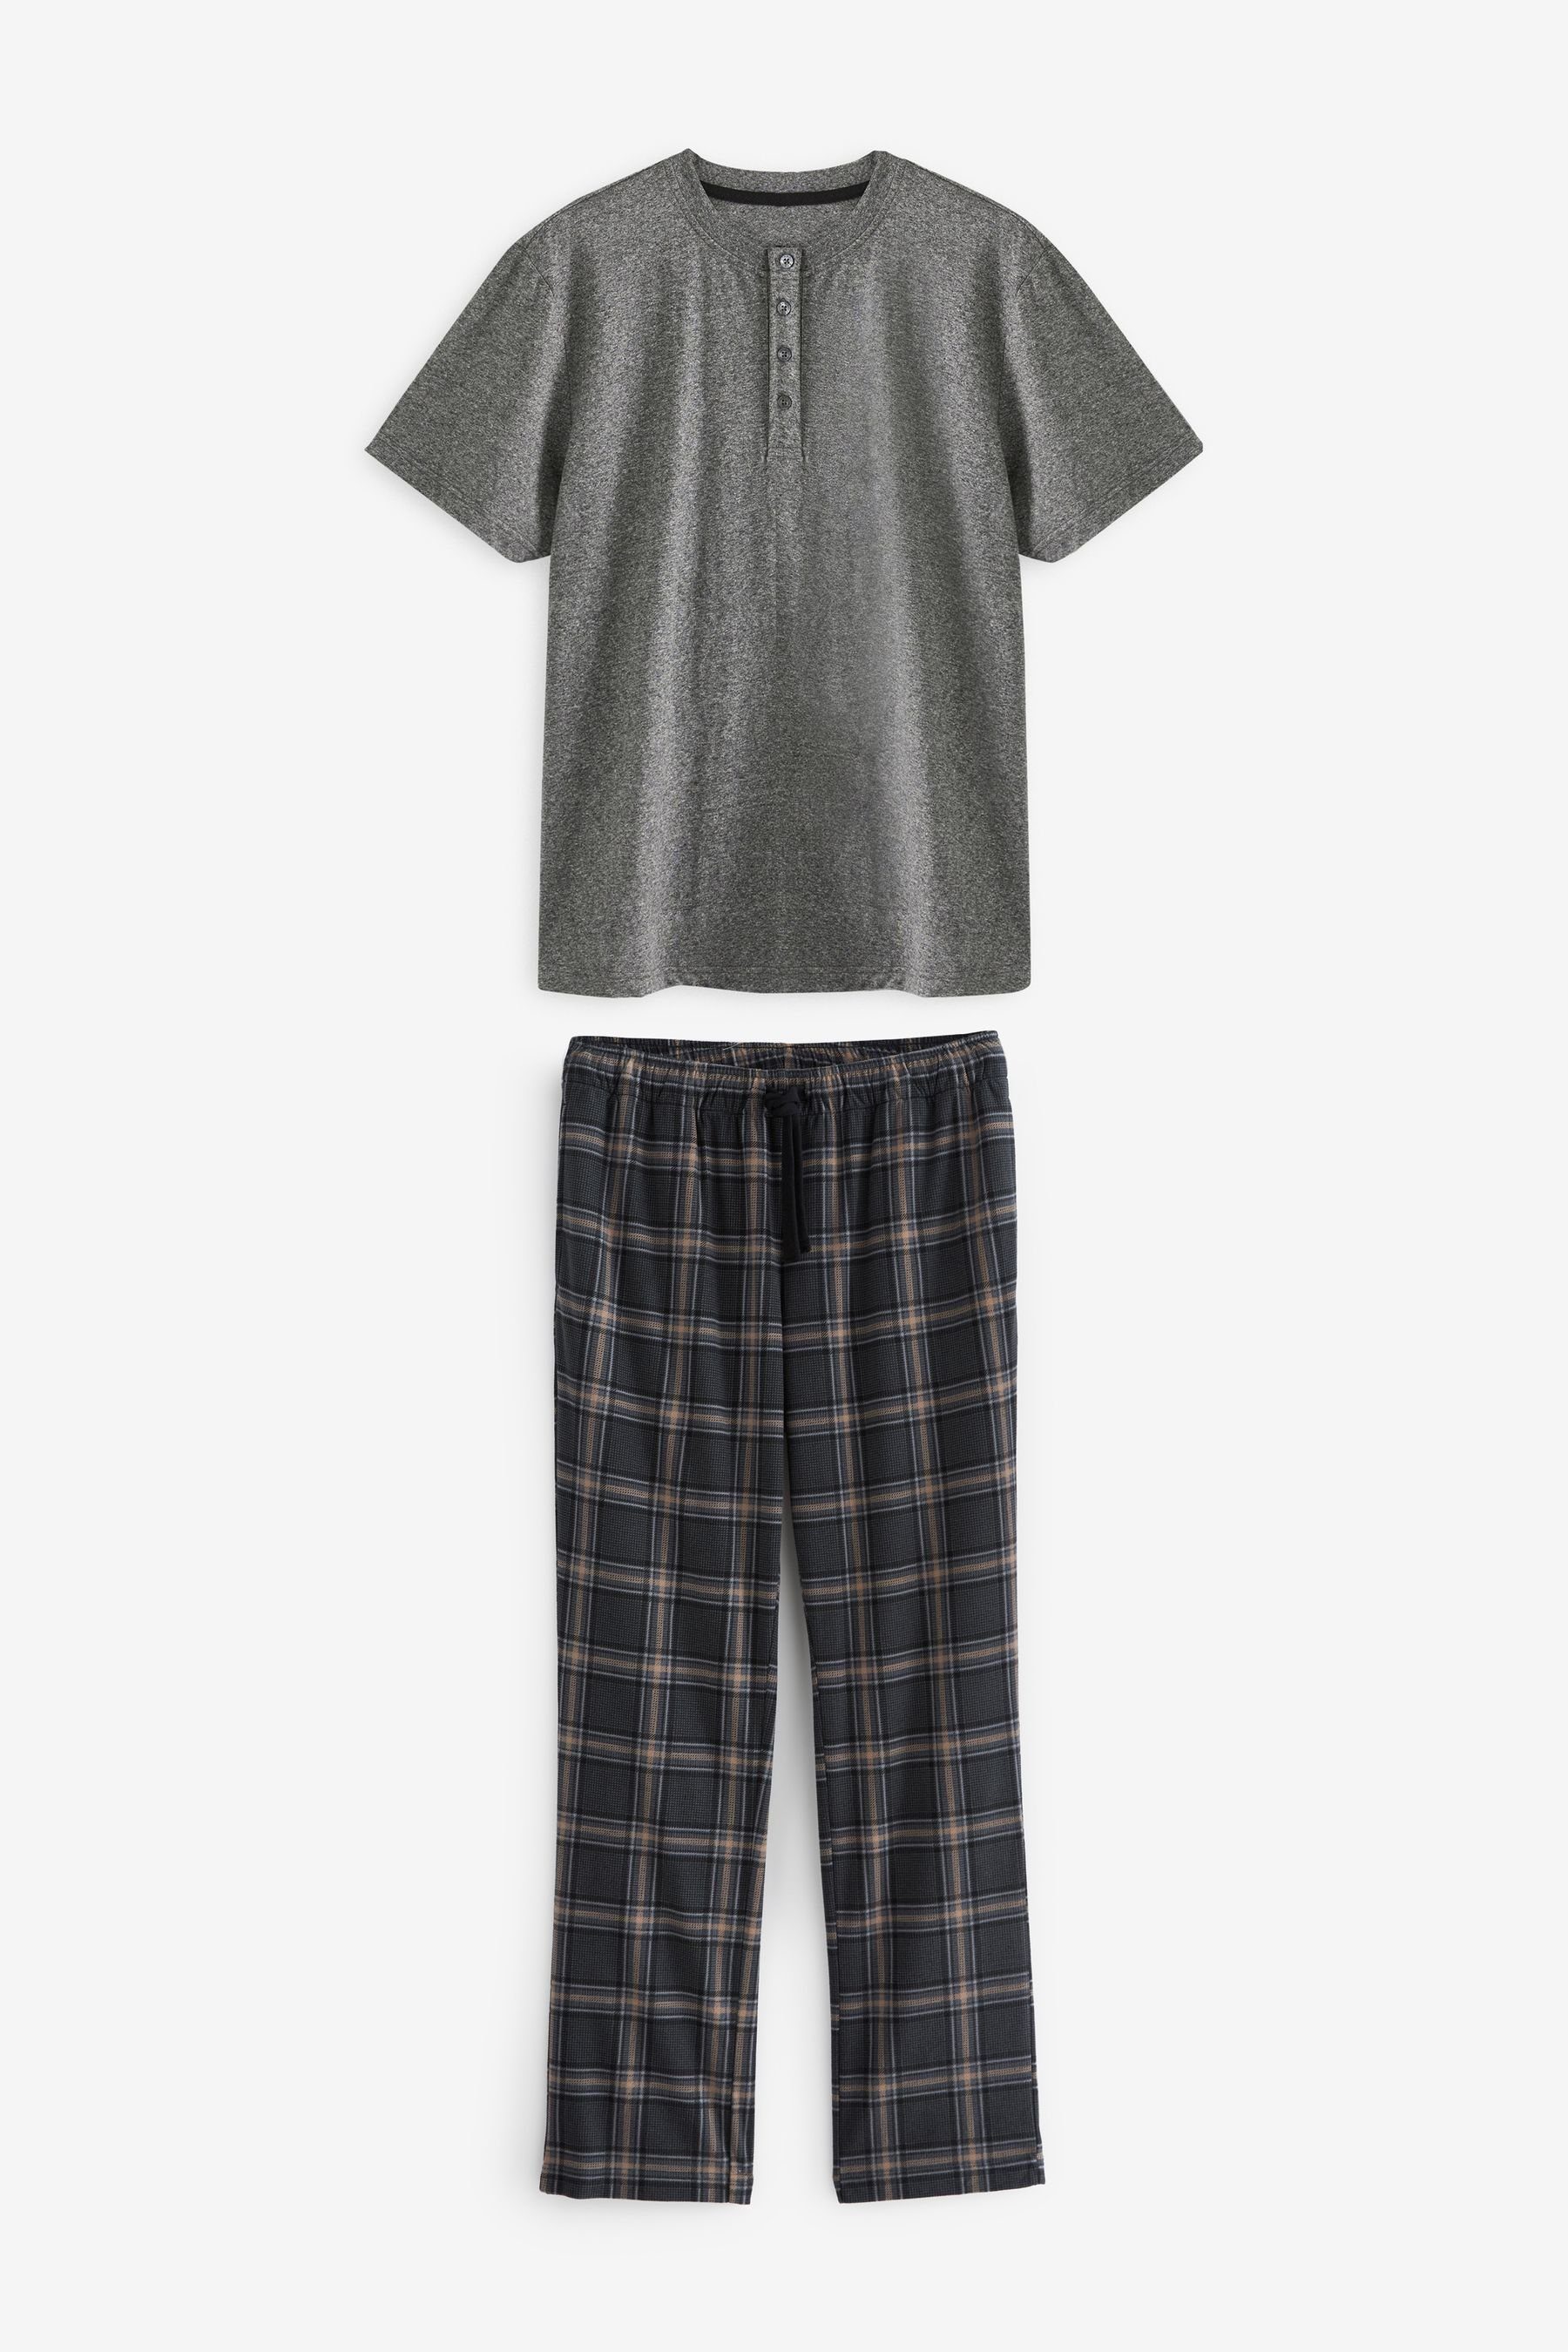 Next Pyjama Bequemer Motionflex Schlafanzug tlg) Check Grey/Black (2